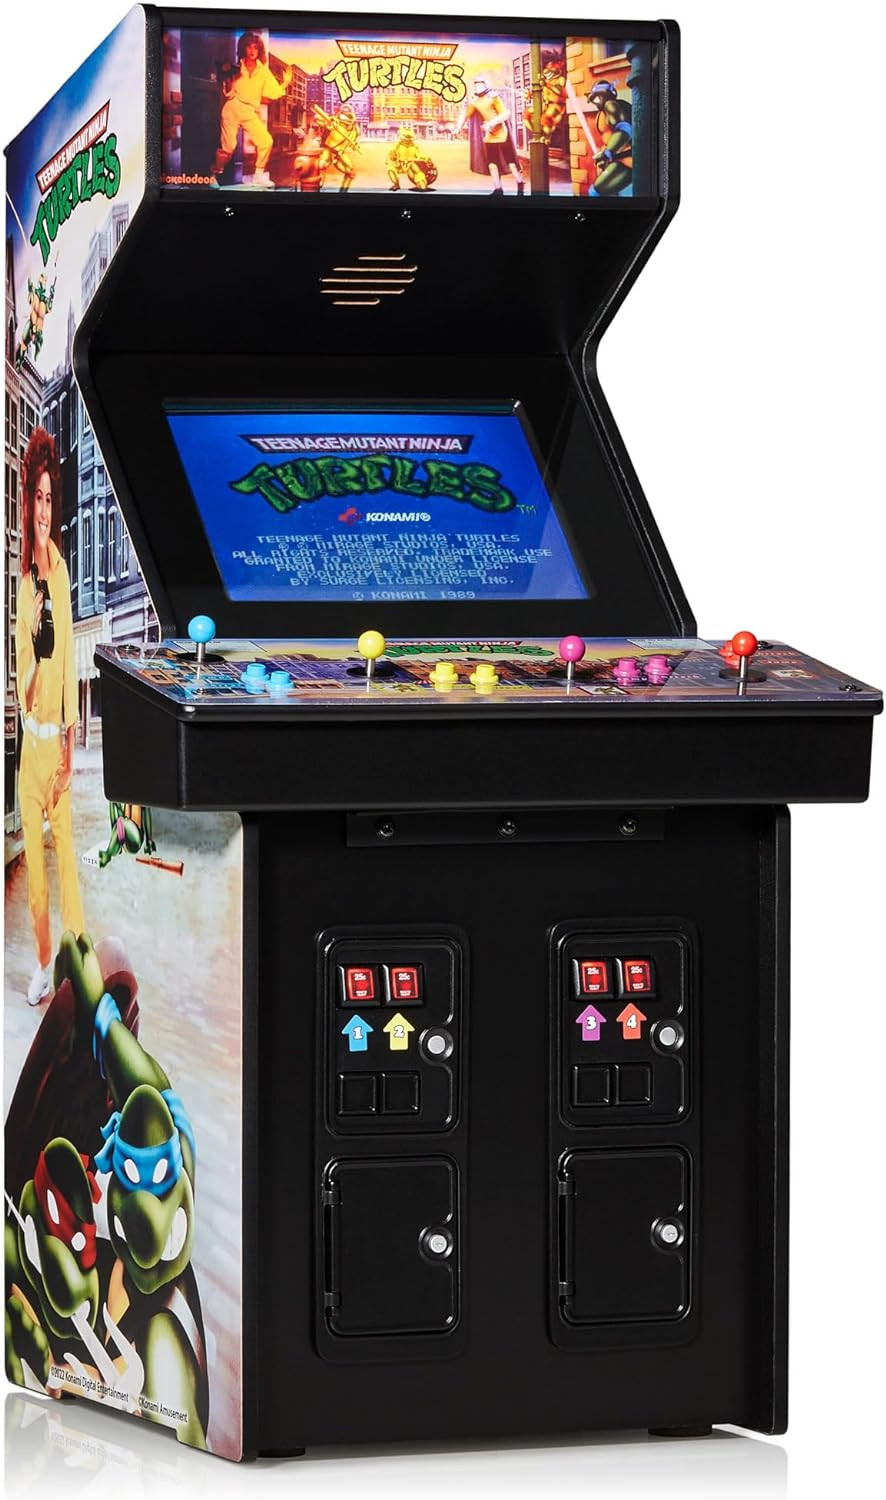 Numskull Teenage Mutant Ninja Turtles - Quarter Arcade